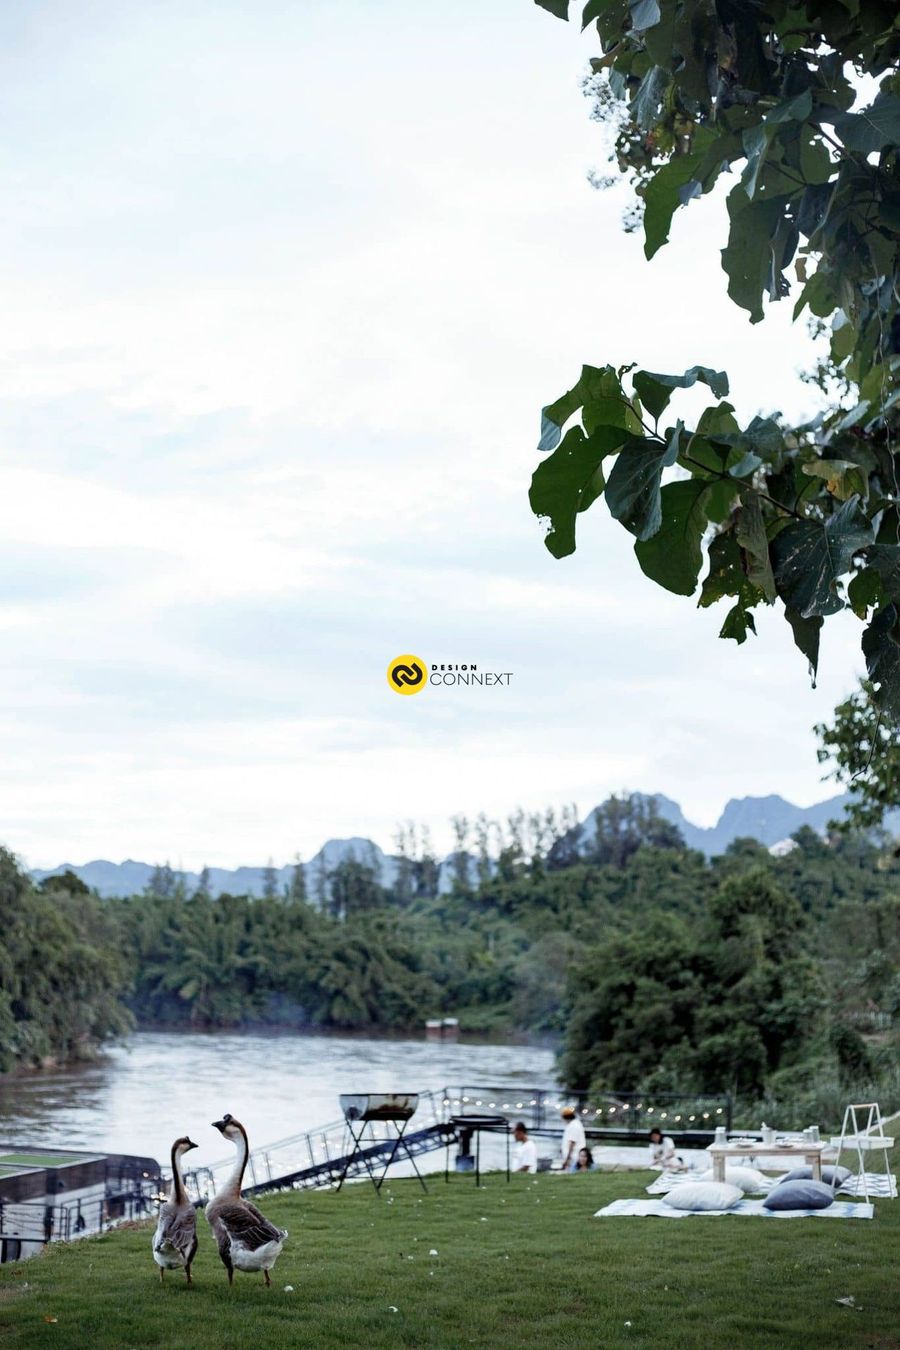 The Tryst River Kwai @ Kanjanaburi